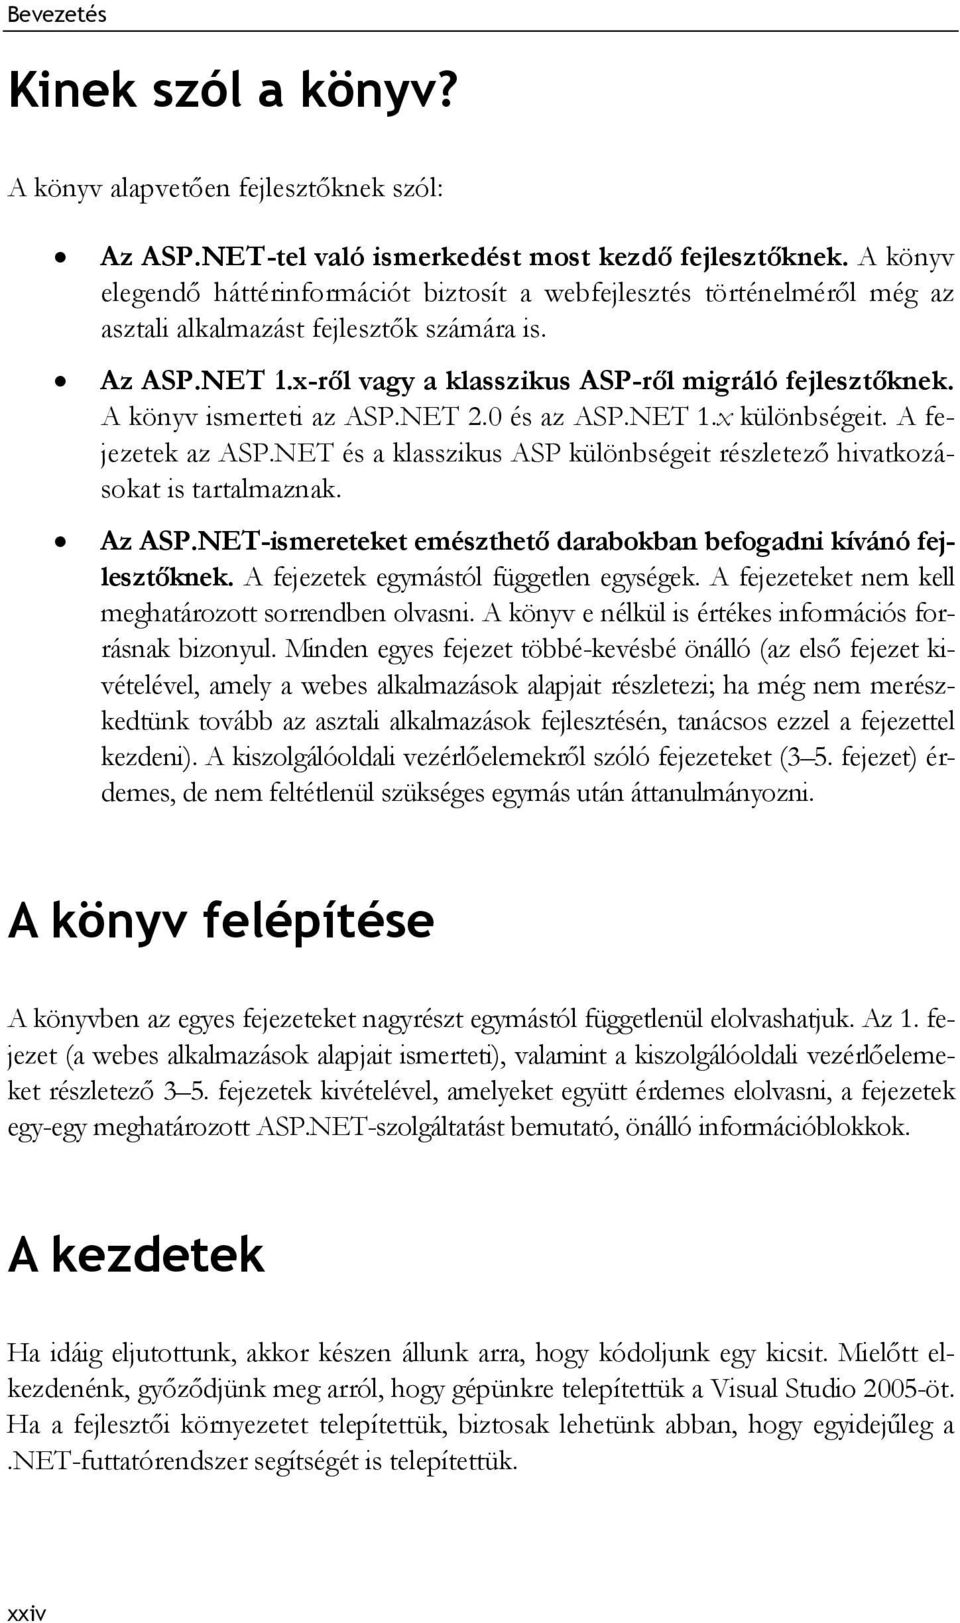 A könyv ismerteti az ASP.NET 2.0 és az ASP.NET 1.x különbségeit. A fejezetek az ASP.NET és a klasszikus ASP különbségeit részletező hivatkozásokat is tartalmaznak. Az ASP.